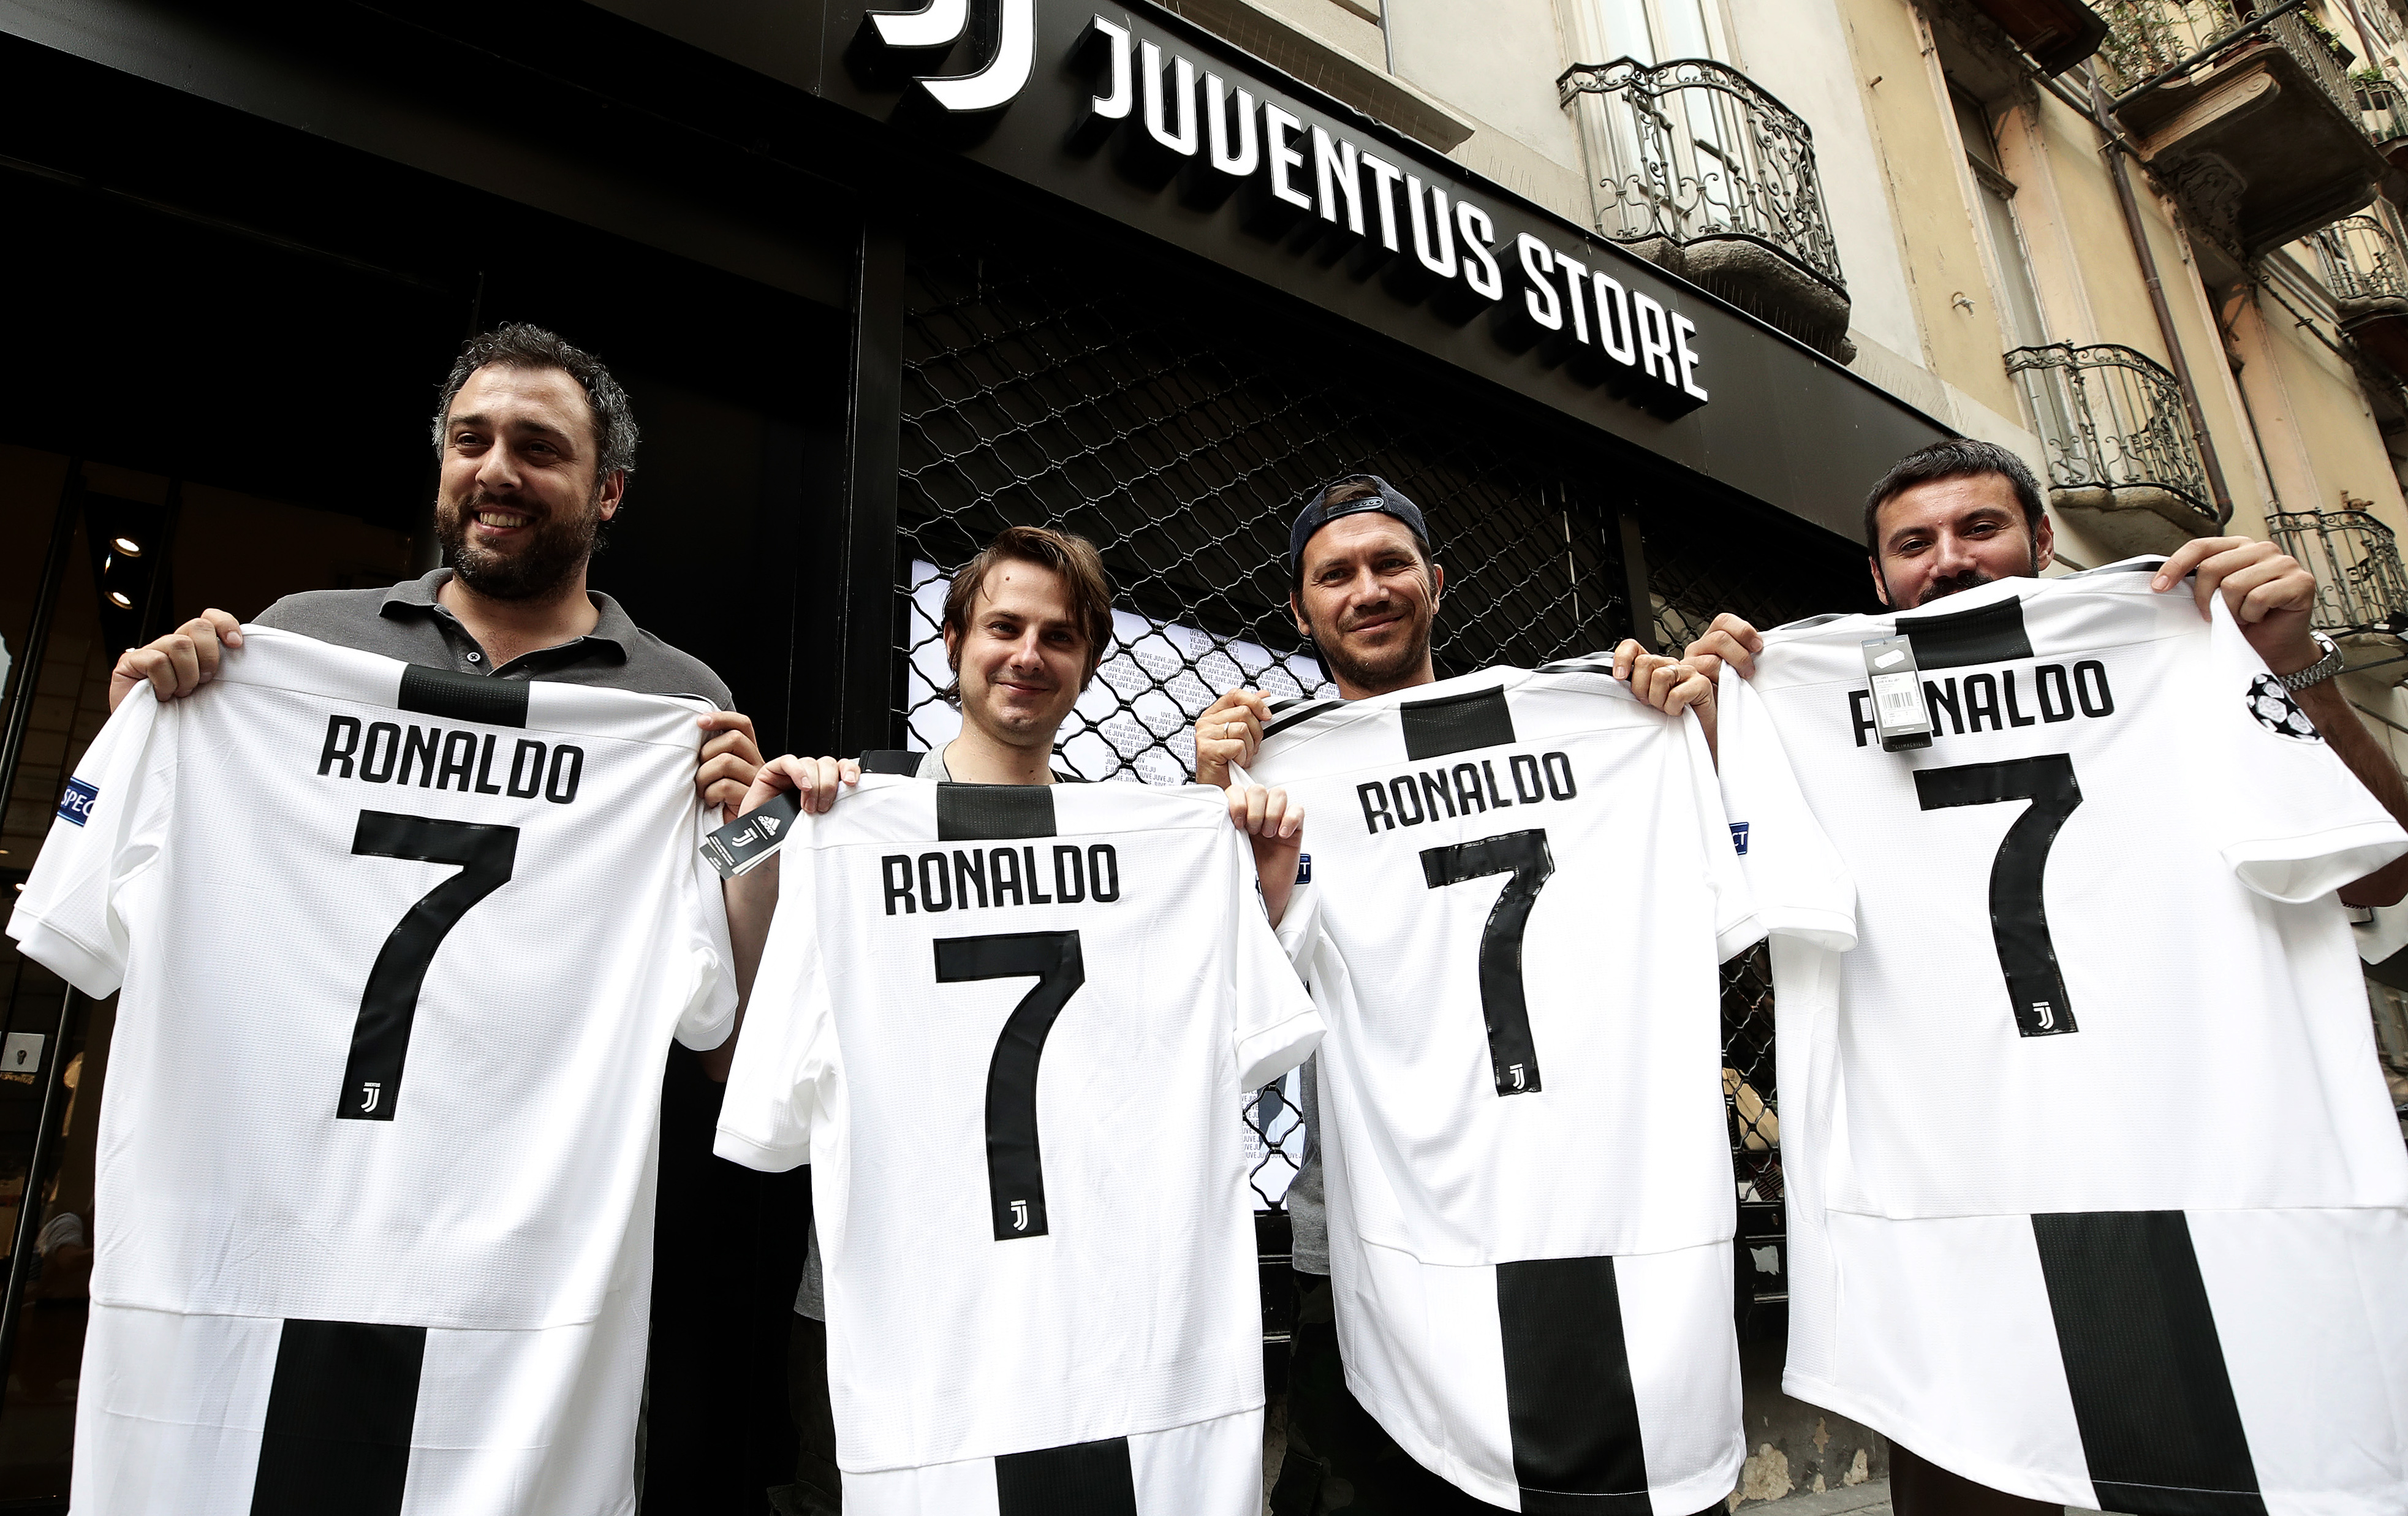 Boldog tifosik az üzlet bejelentése után egy torinói Juventus Store előtt